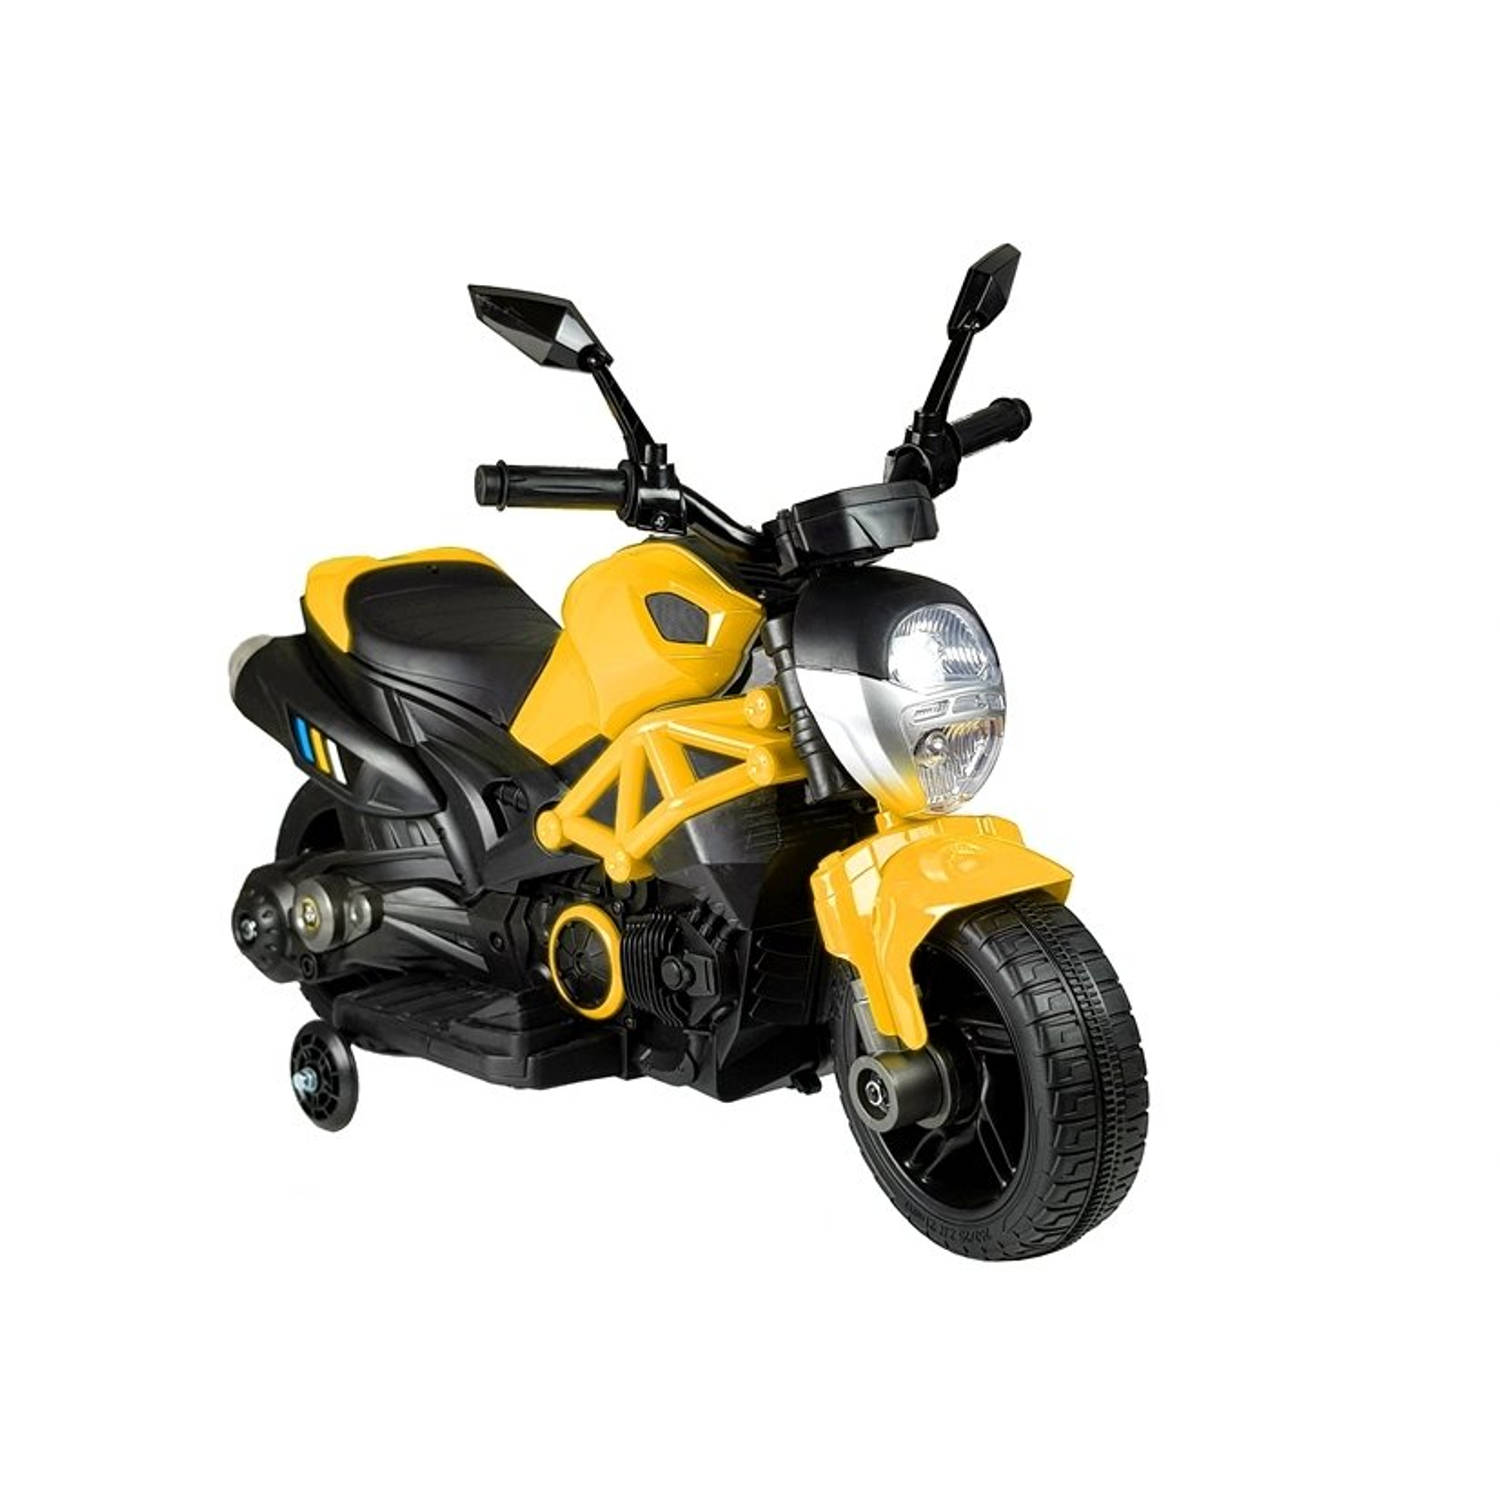 Elektrische naked bike - kindermotor - motor voor kinderen - tot 25kg max 1-3 km/h geel - kids accu motor